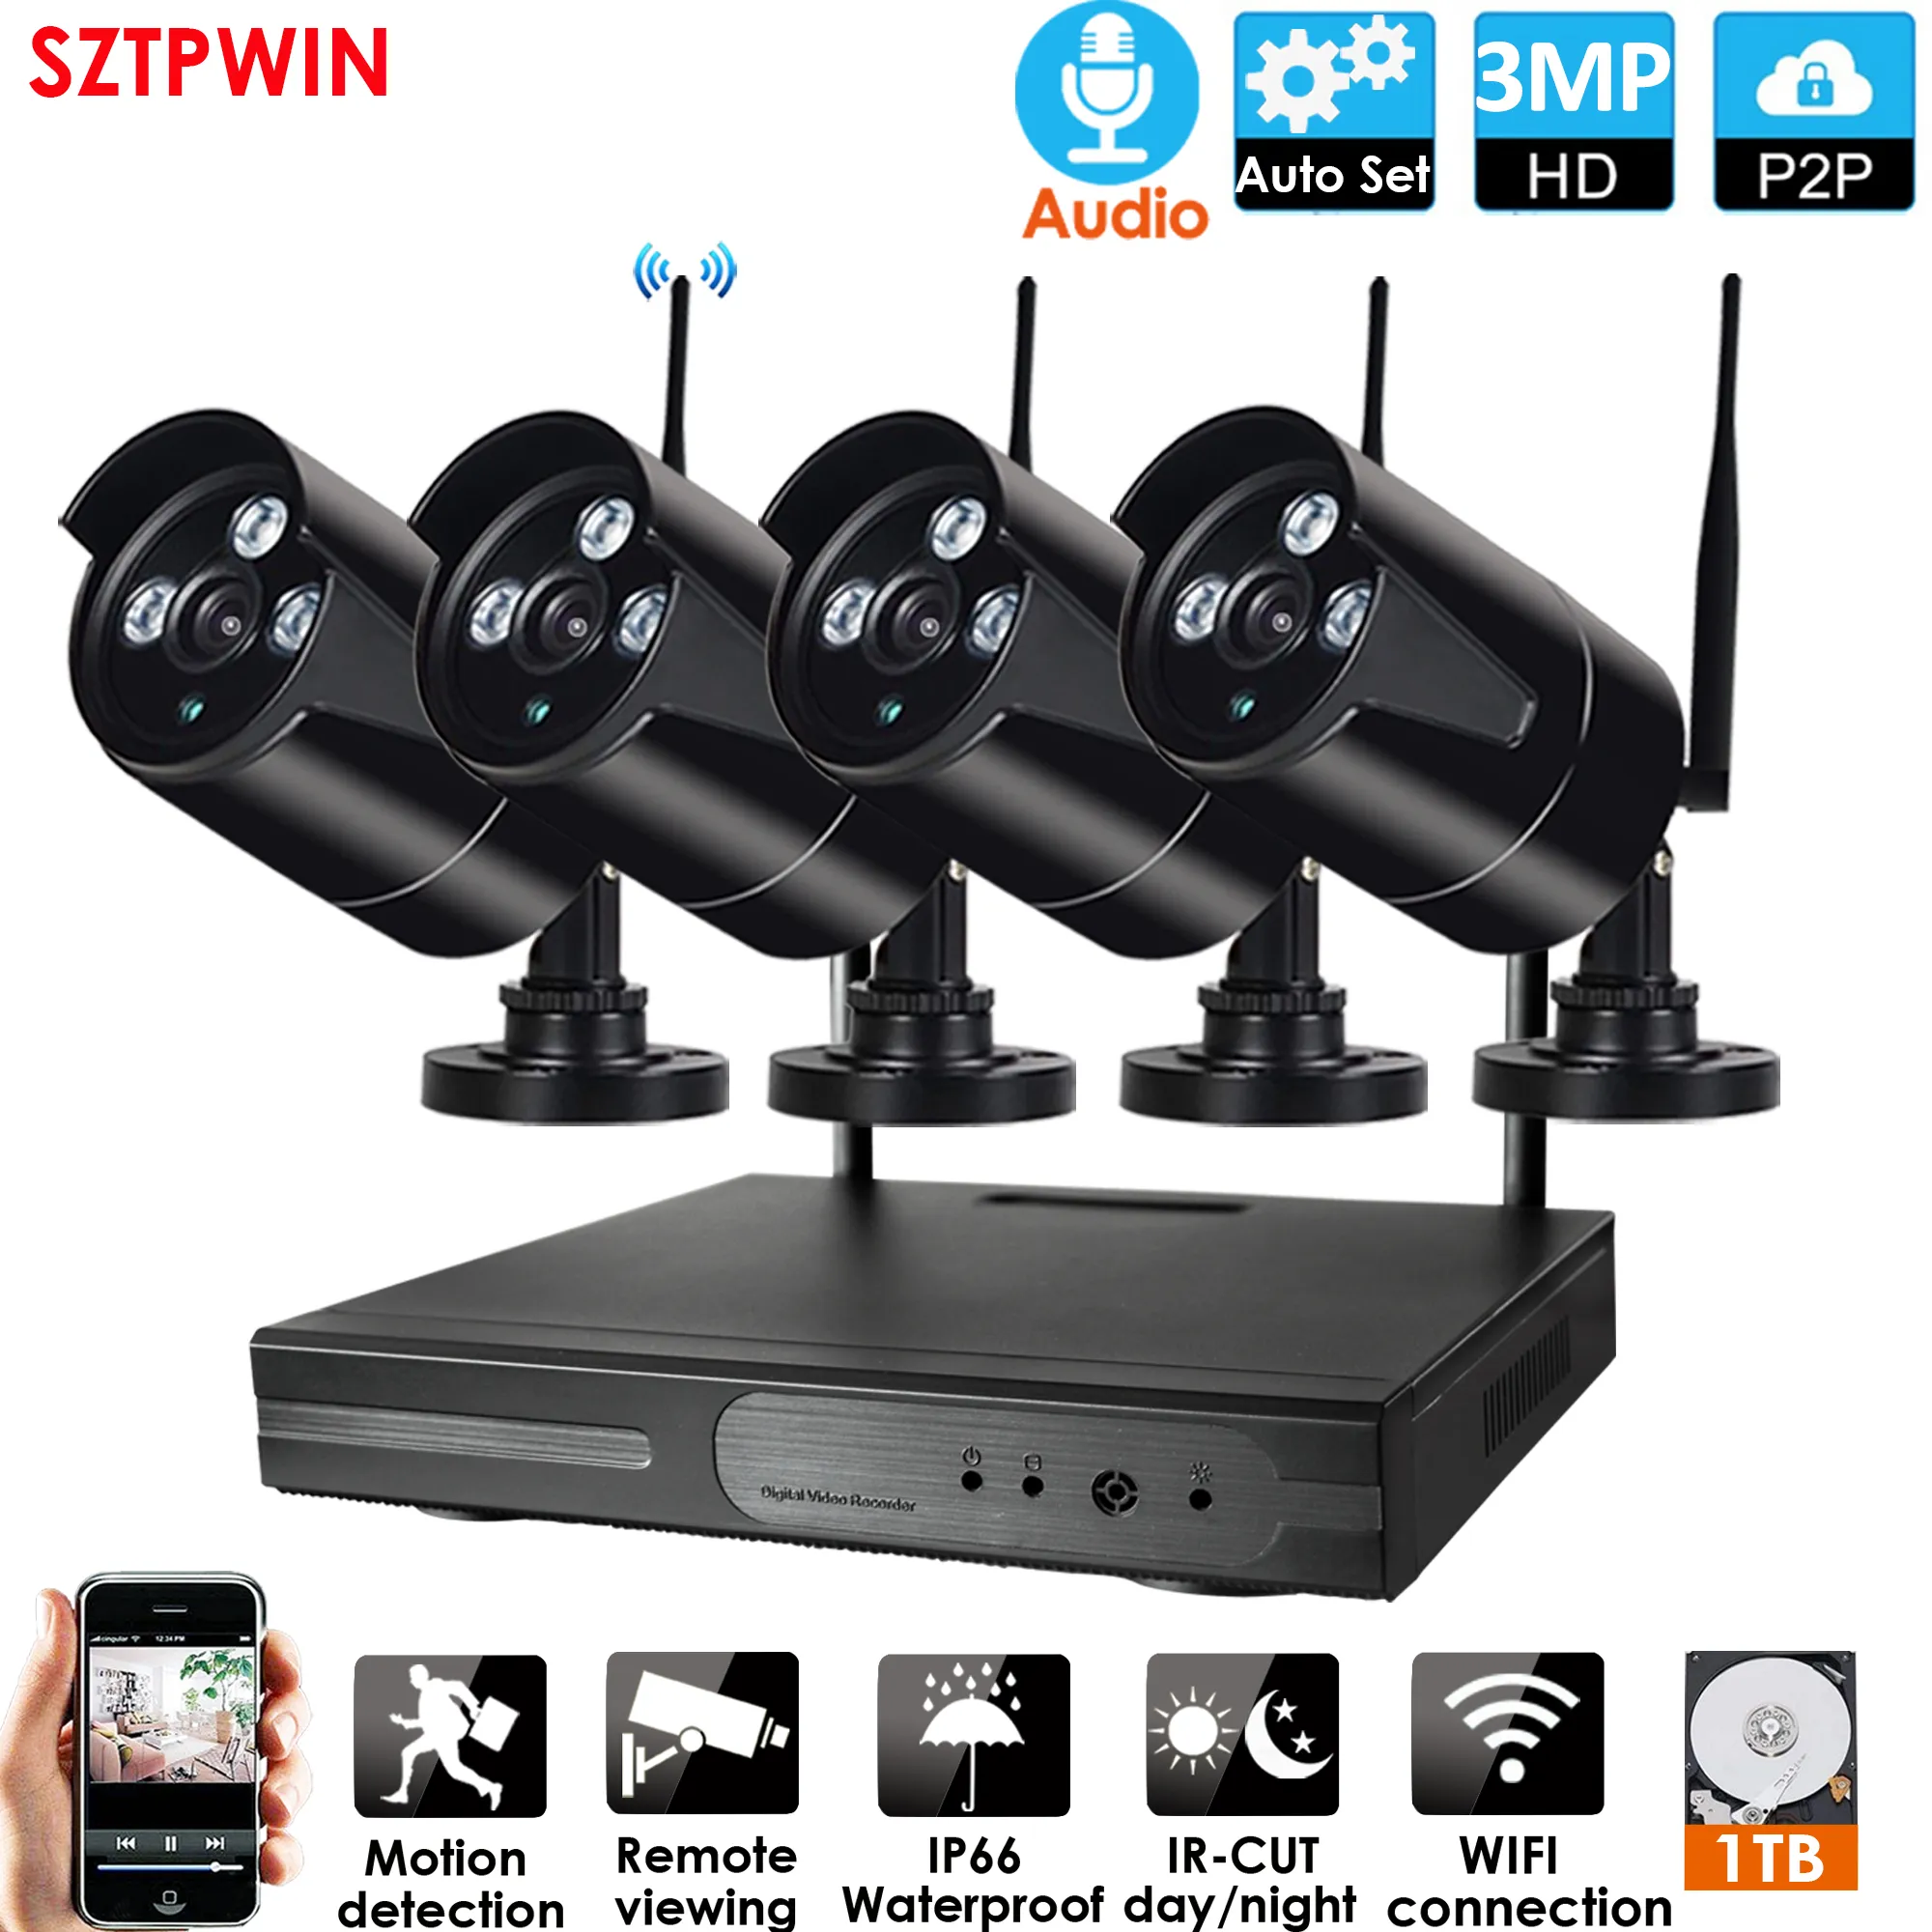 4CH 3.0mp Plug Inplay Audio CCTV-system Trådlöst 1080P NVR 4PCS 3.0MP IR Outdoor P2P WIFI IP CCTV Säkerhetskamera Systemövervakningskit